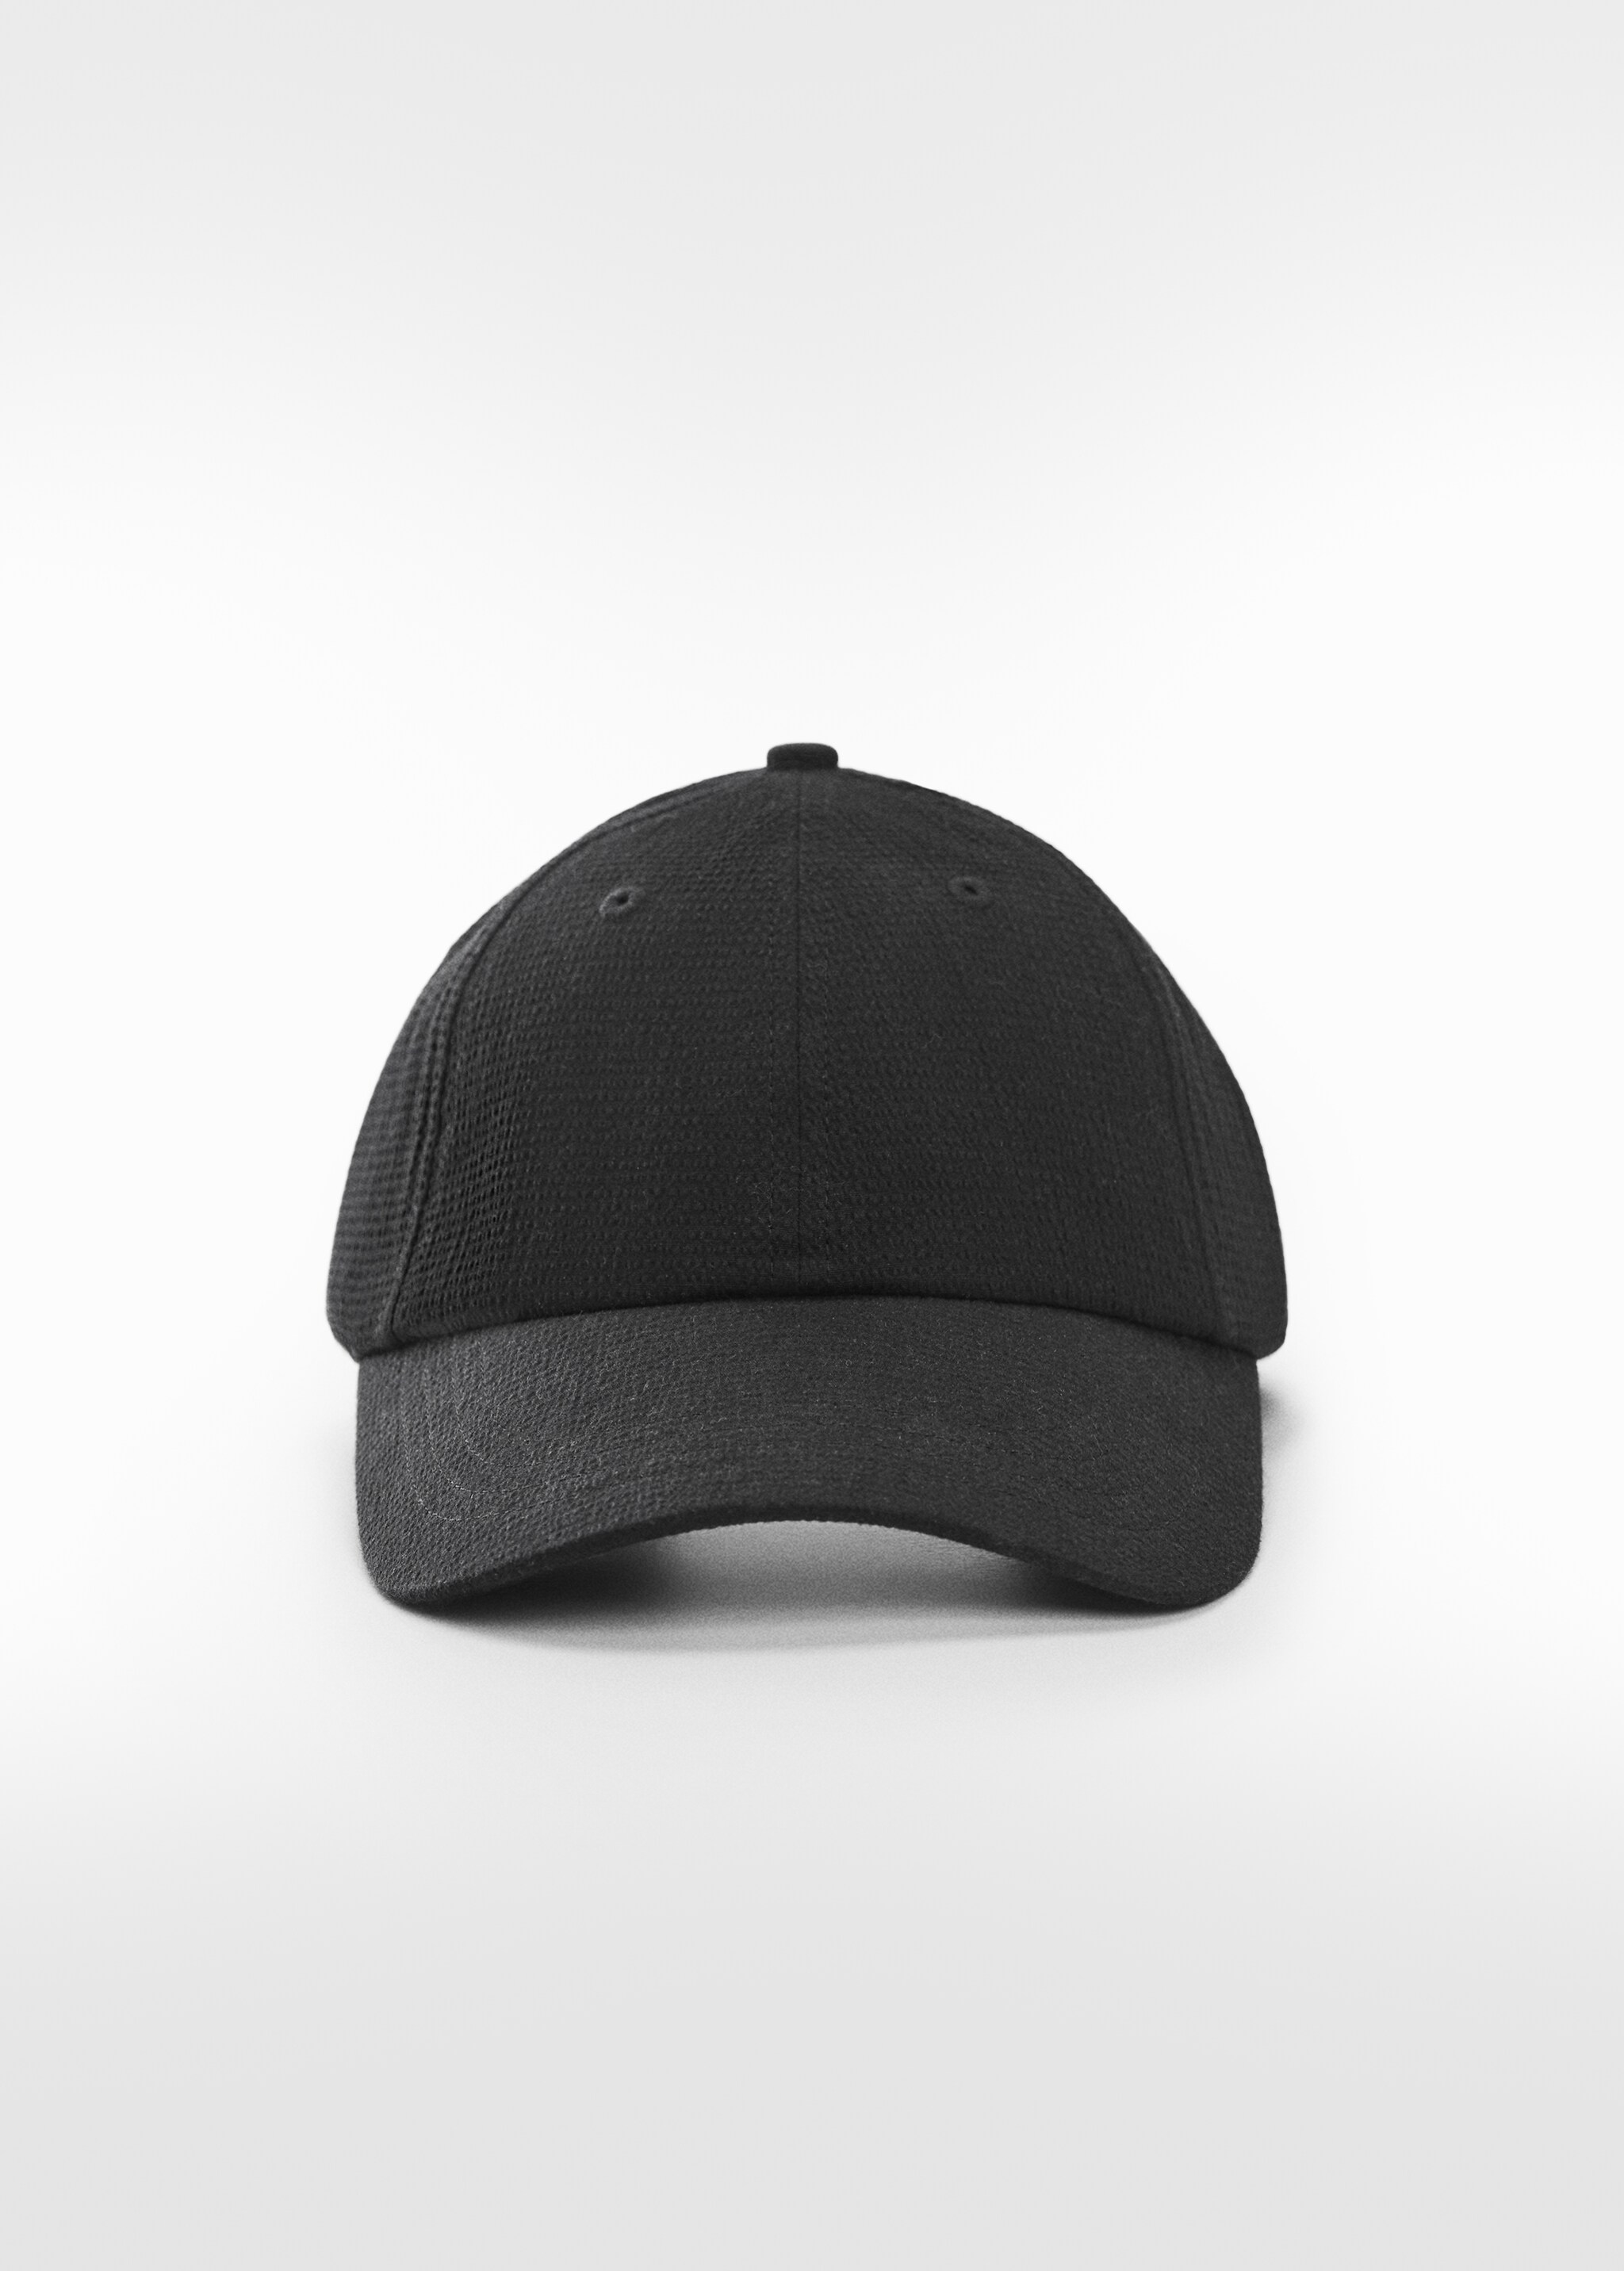 Textured cap with visor - Medium plane